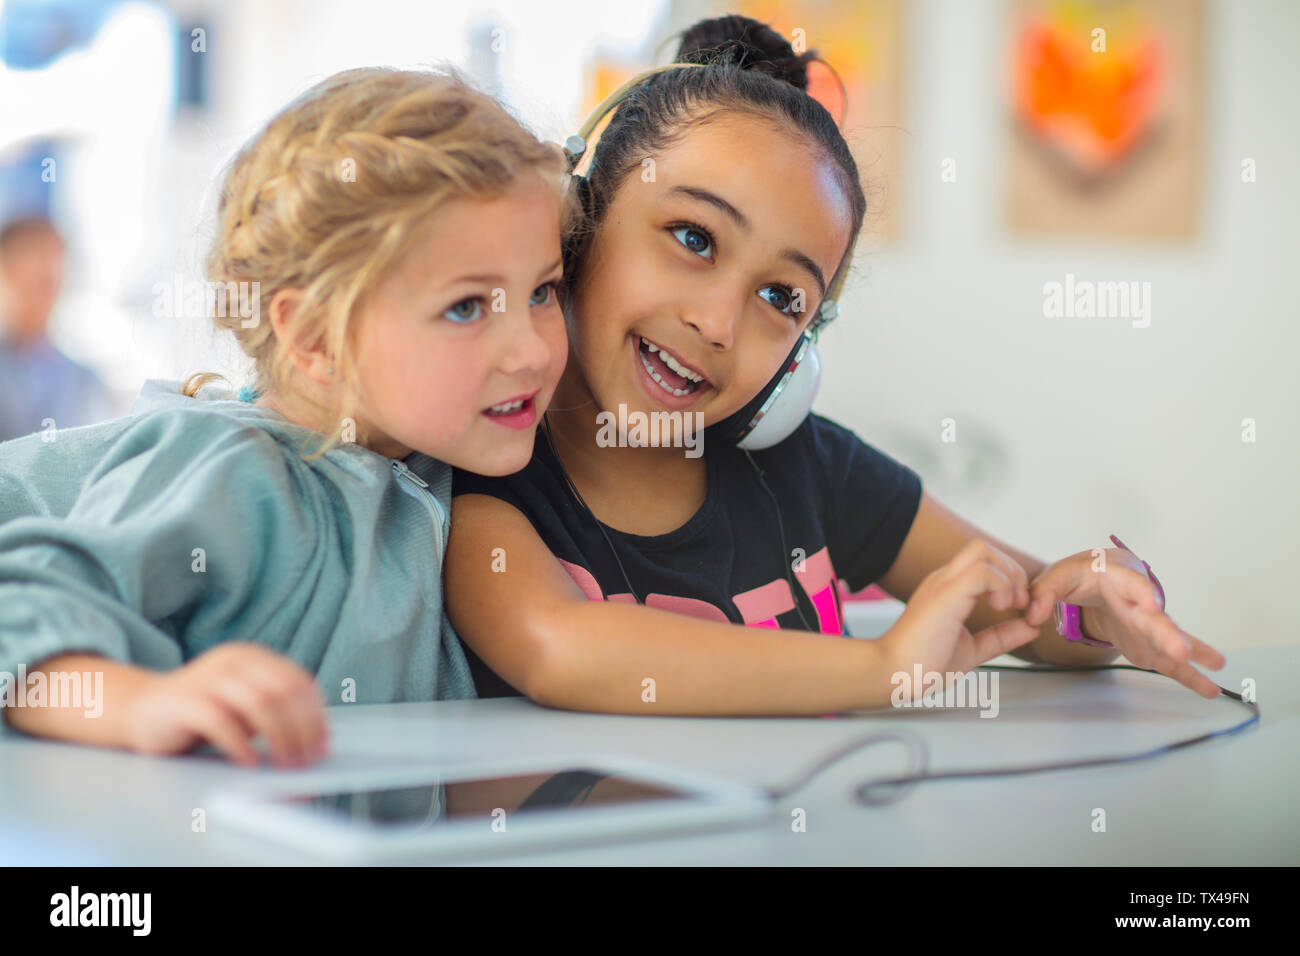 Two girls sharing headphones in kindergarten Stock Photo